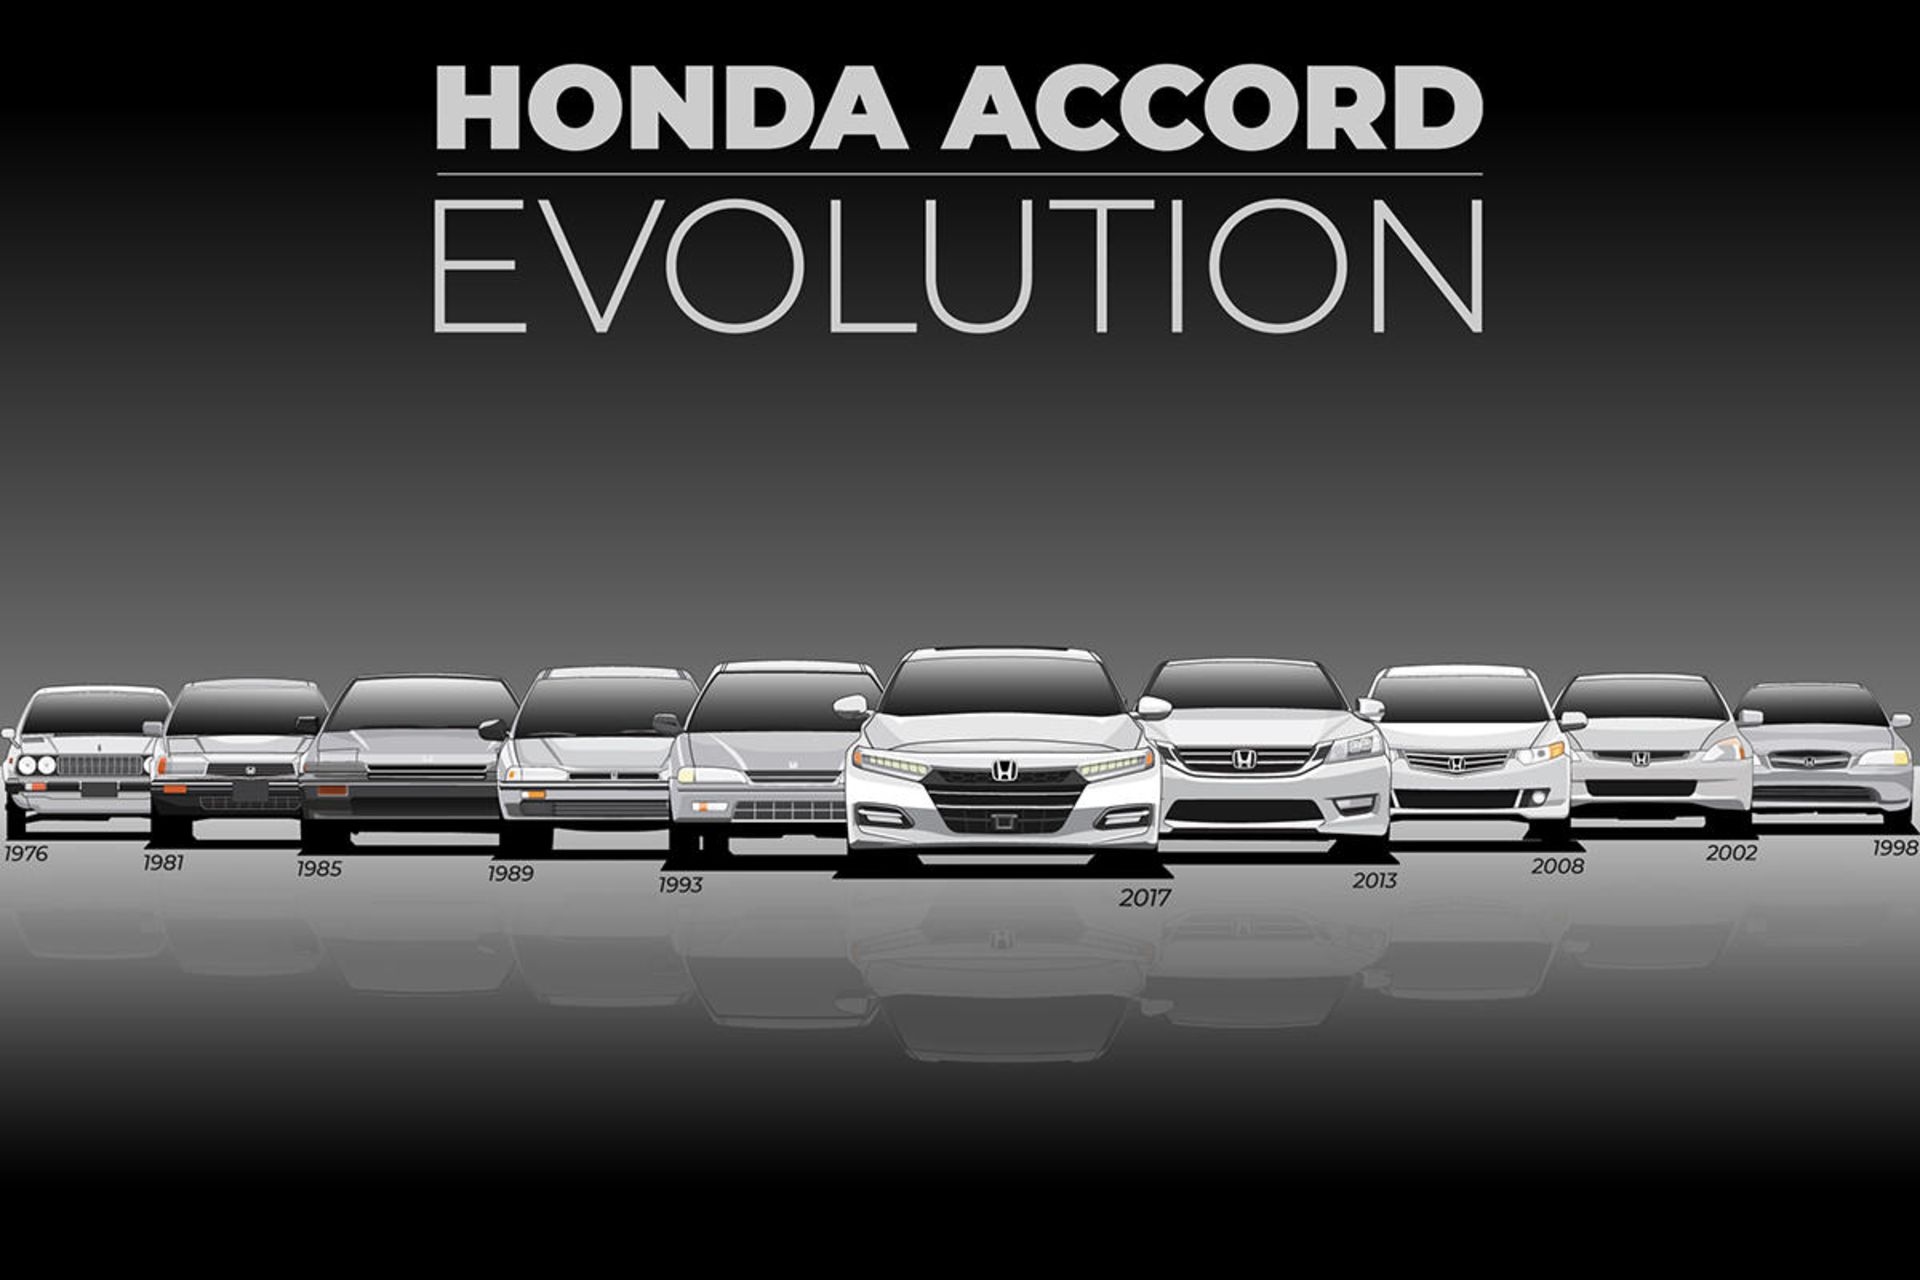 تغییر نسل خودرو هوندا آکورد / Honda Accord evolution